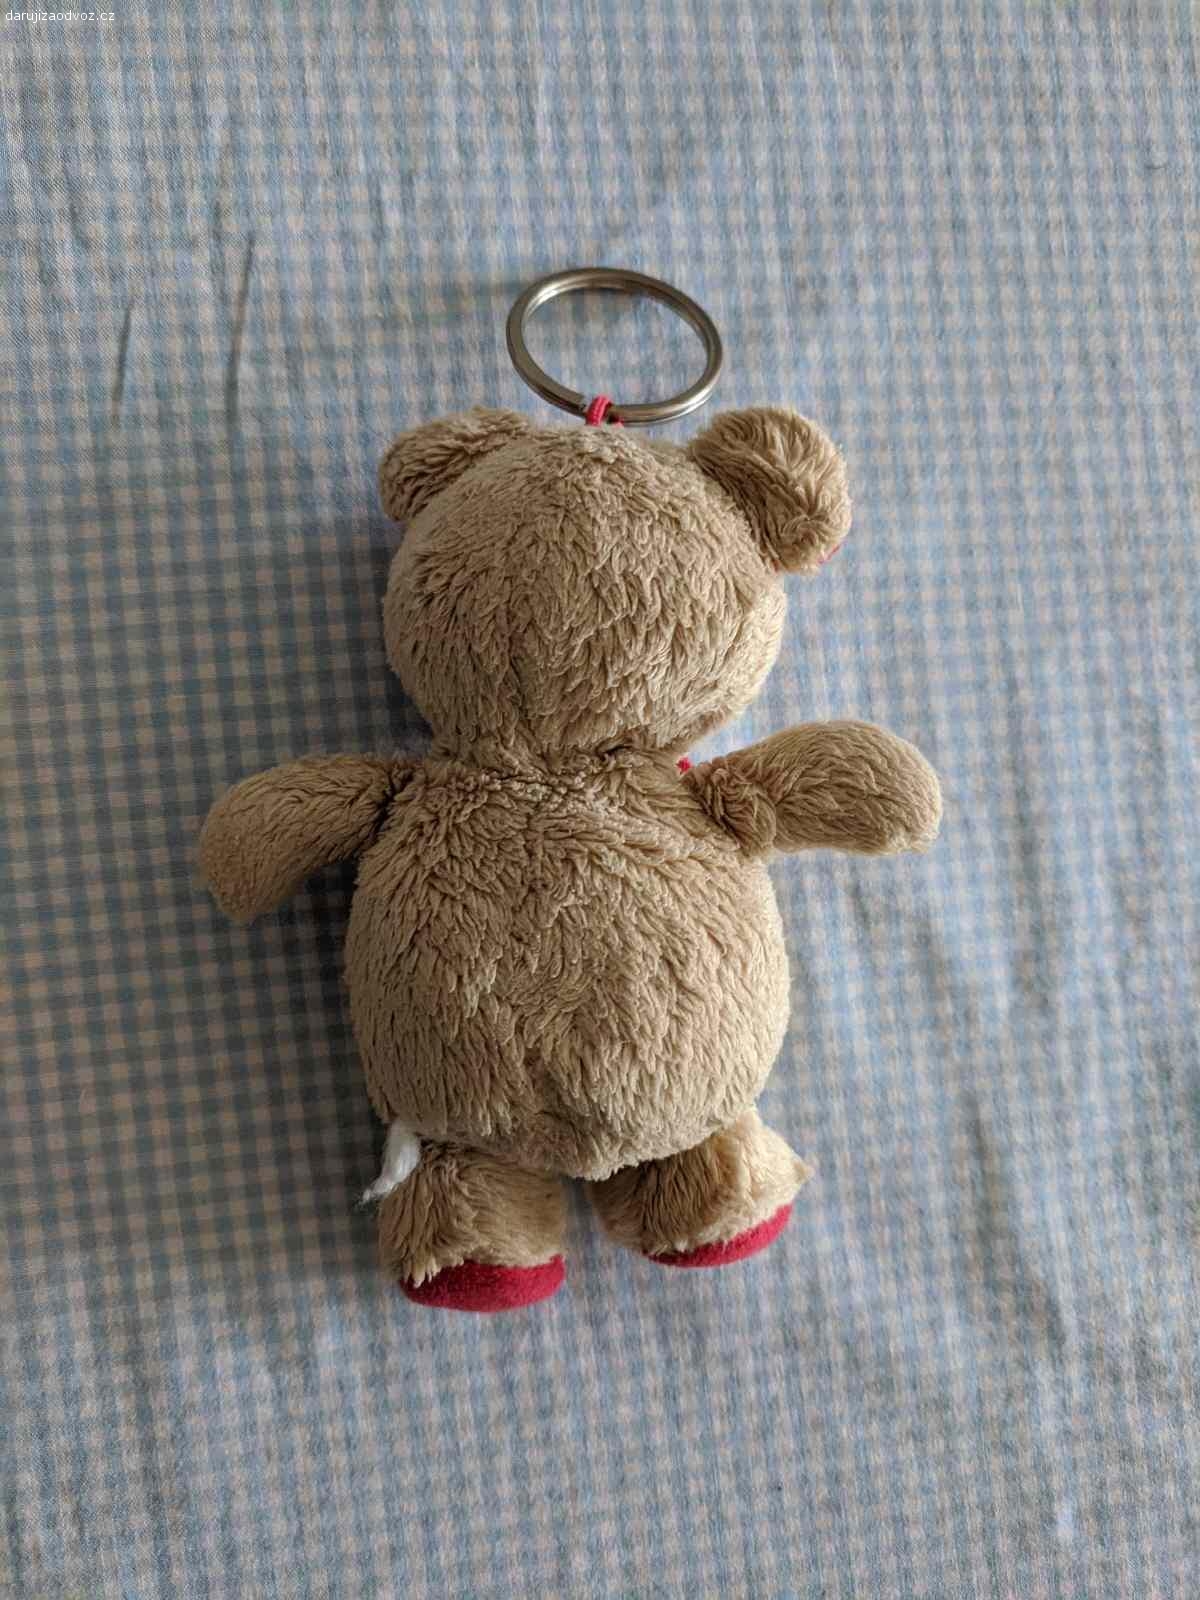 Daruji plyšového medvěda - přívěšek na klíče. Daruji plyšového medvěda - přívěšek na klíče, výška 13 cm. 

Předání pouze v Praze (ideálně Praha 13), nikam neposílám ani při platbě poštovného. Děkuji za pochopení.